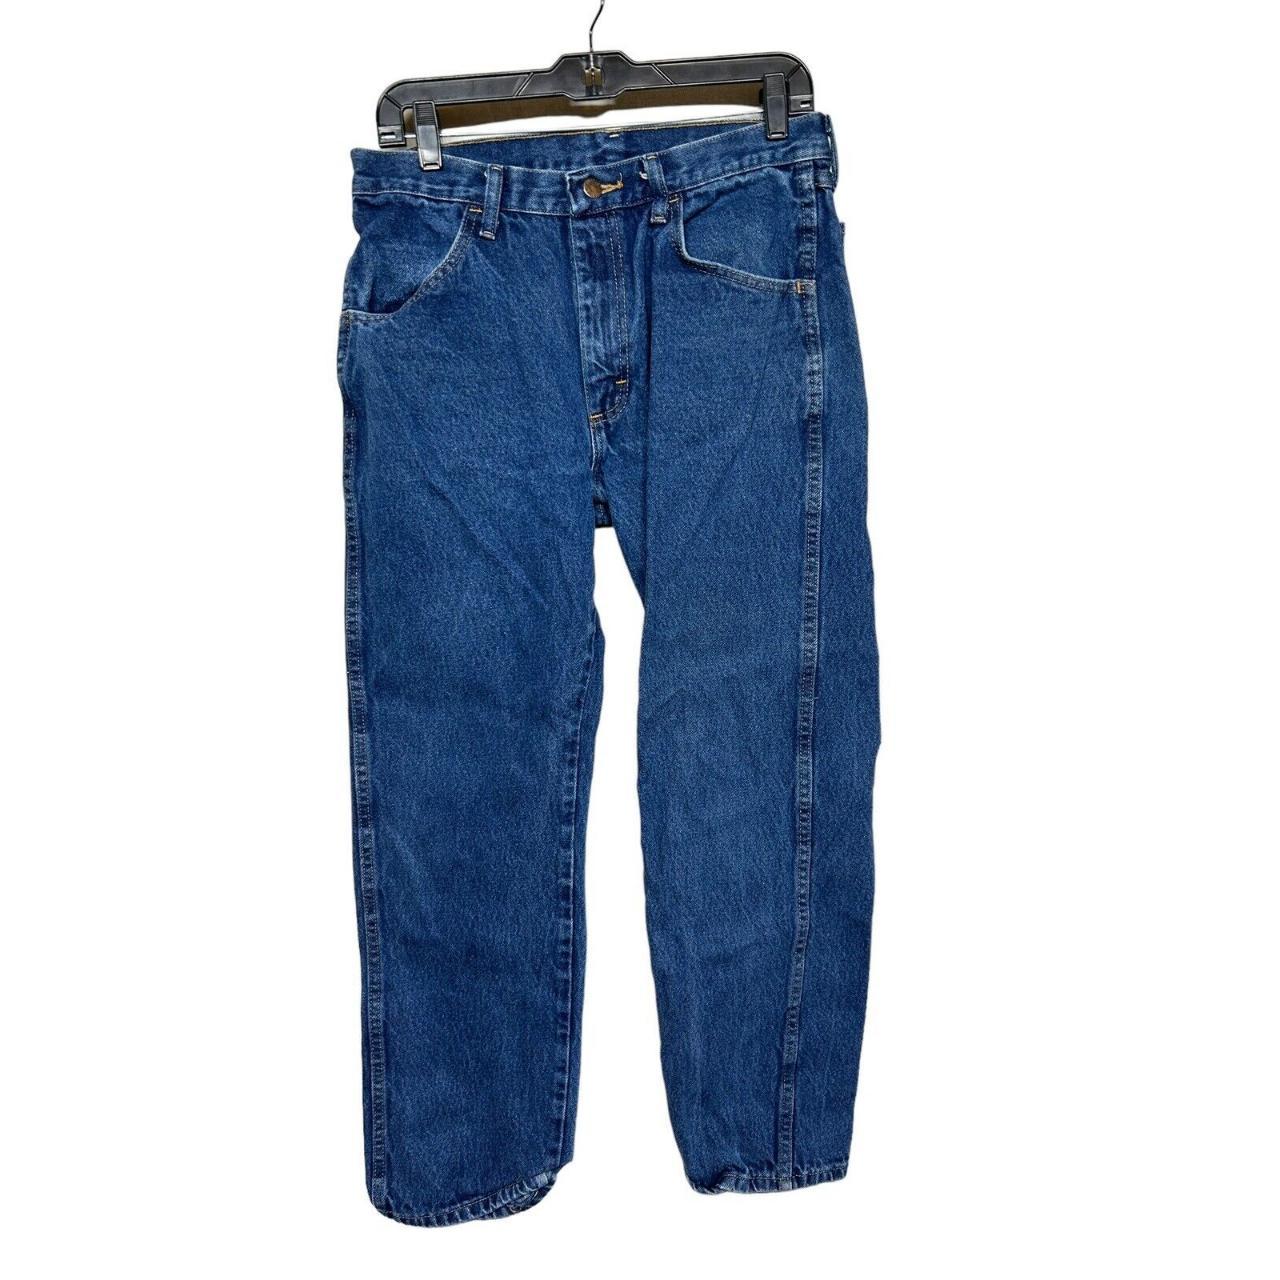 Rustler Men's Jeans Size 32x30 Straight leg Blue...